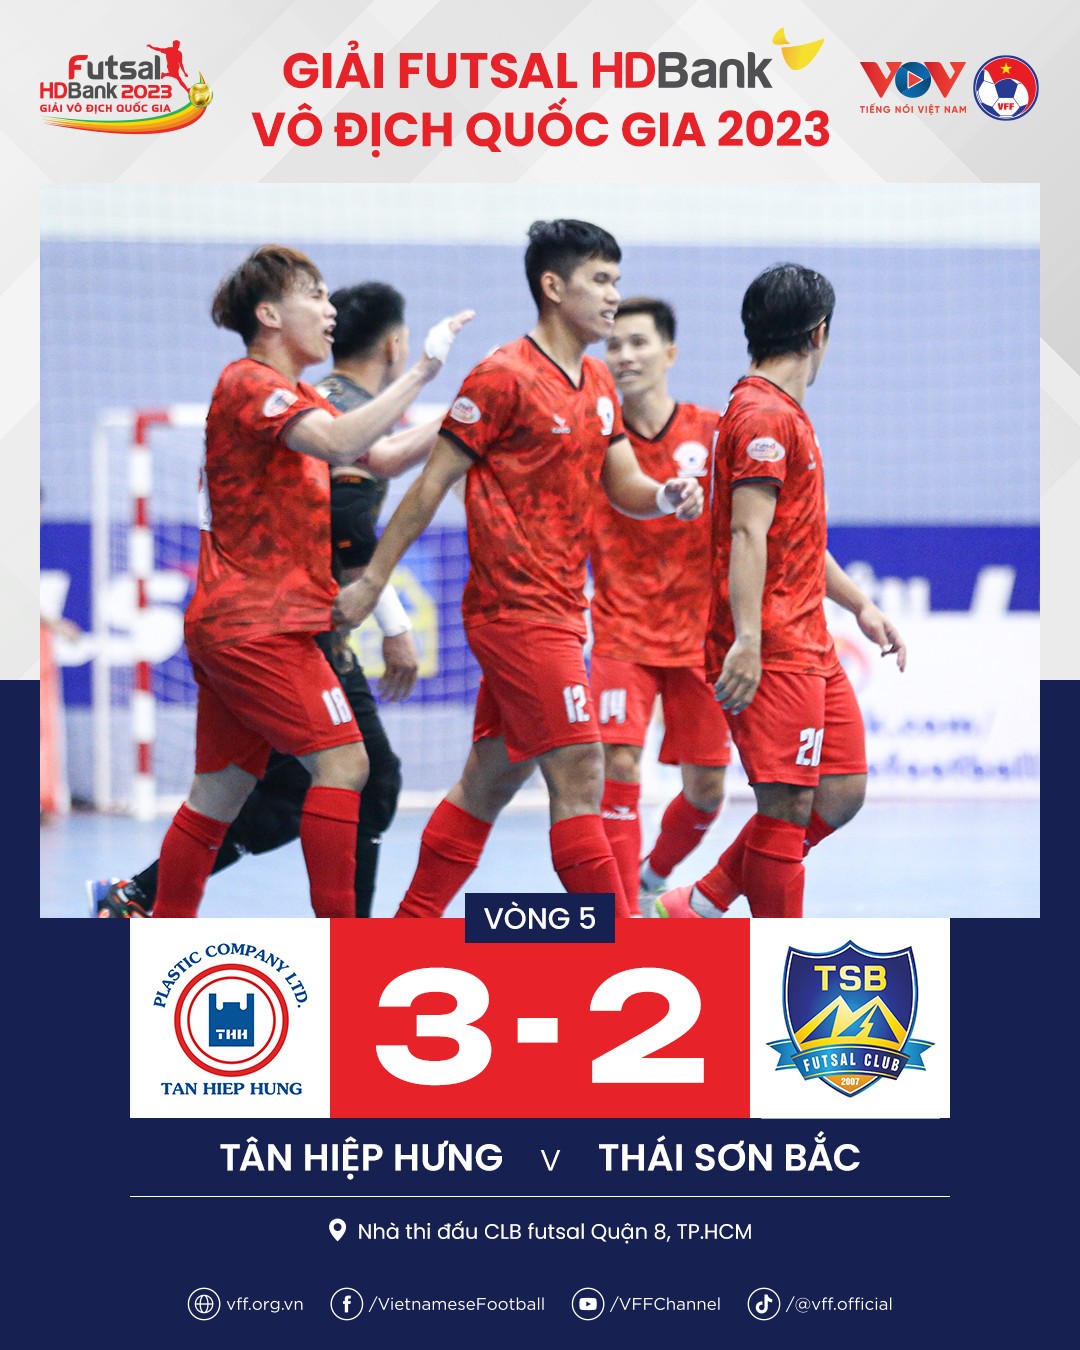 Vòng 5 giải Futsal HDBank VĐQG: Thái Sơn Nam TP.HCM phả 'hơi nóng' lên top đầu